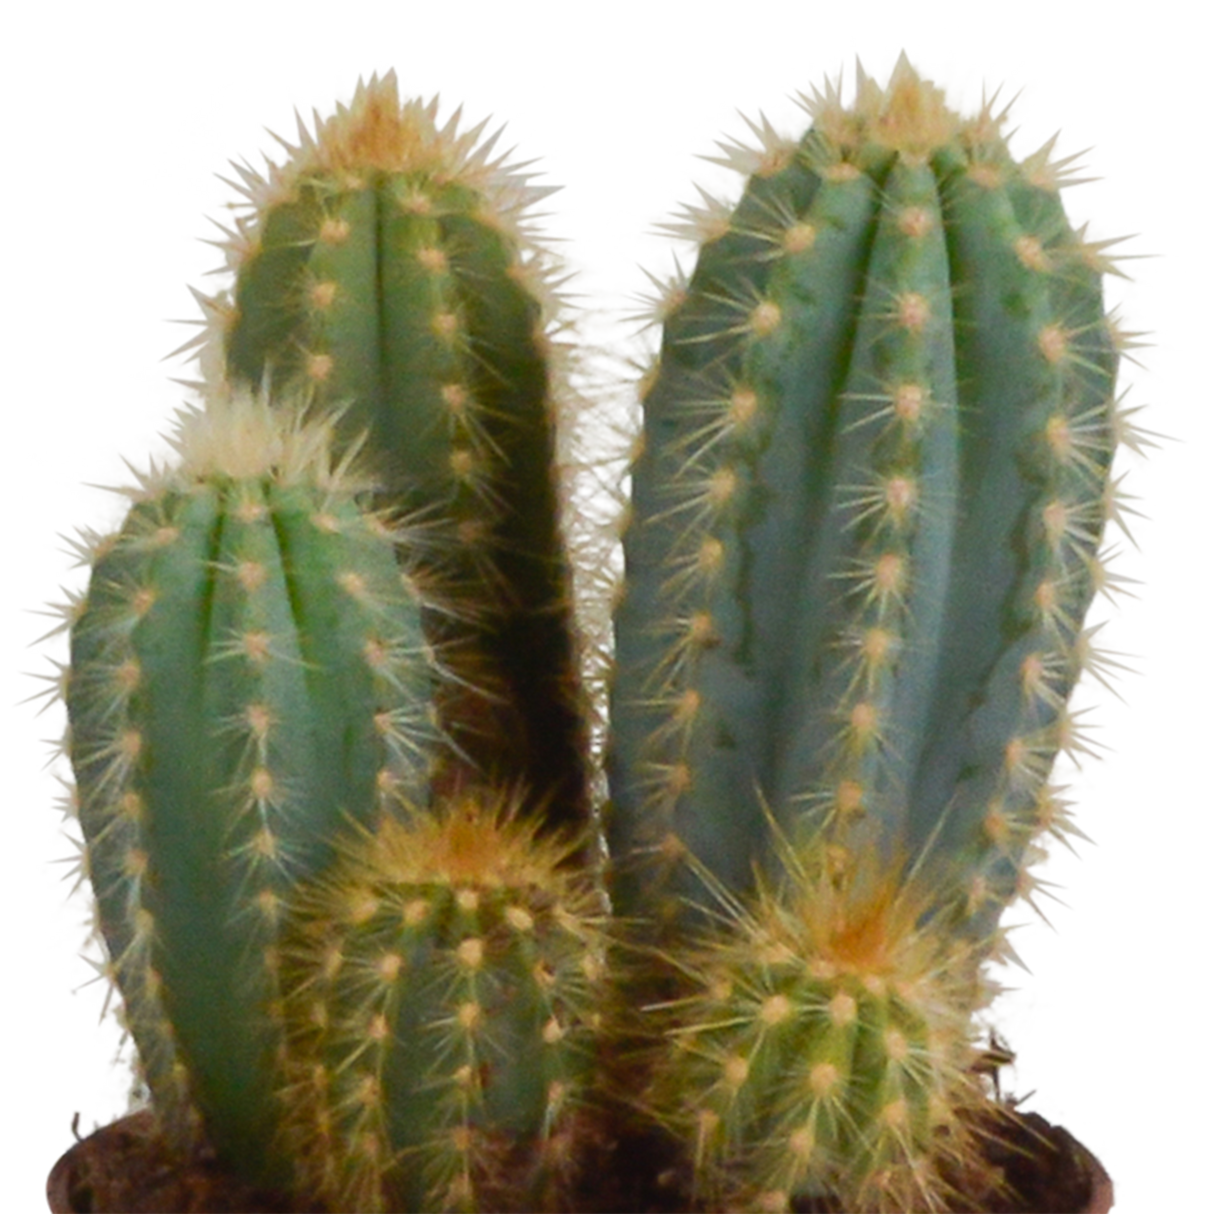 Trio di cactus e relativi vasi da fiori h23cm